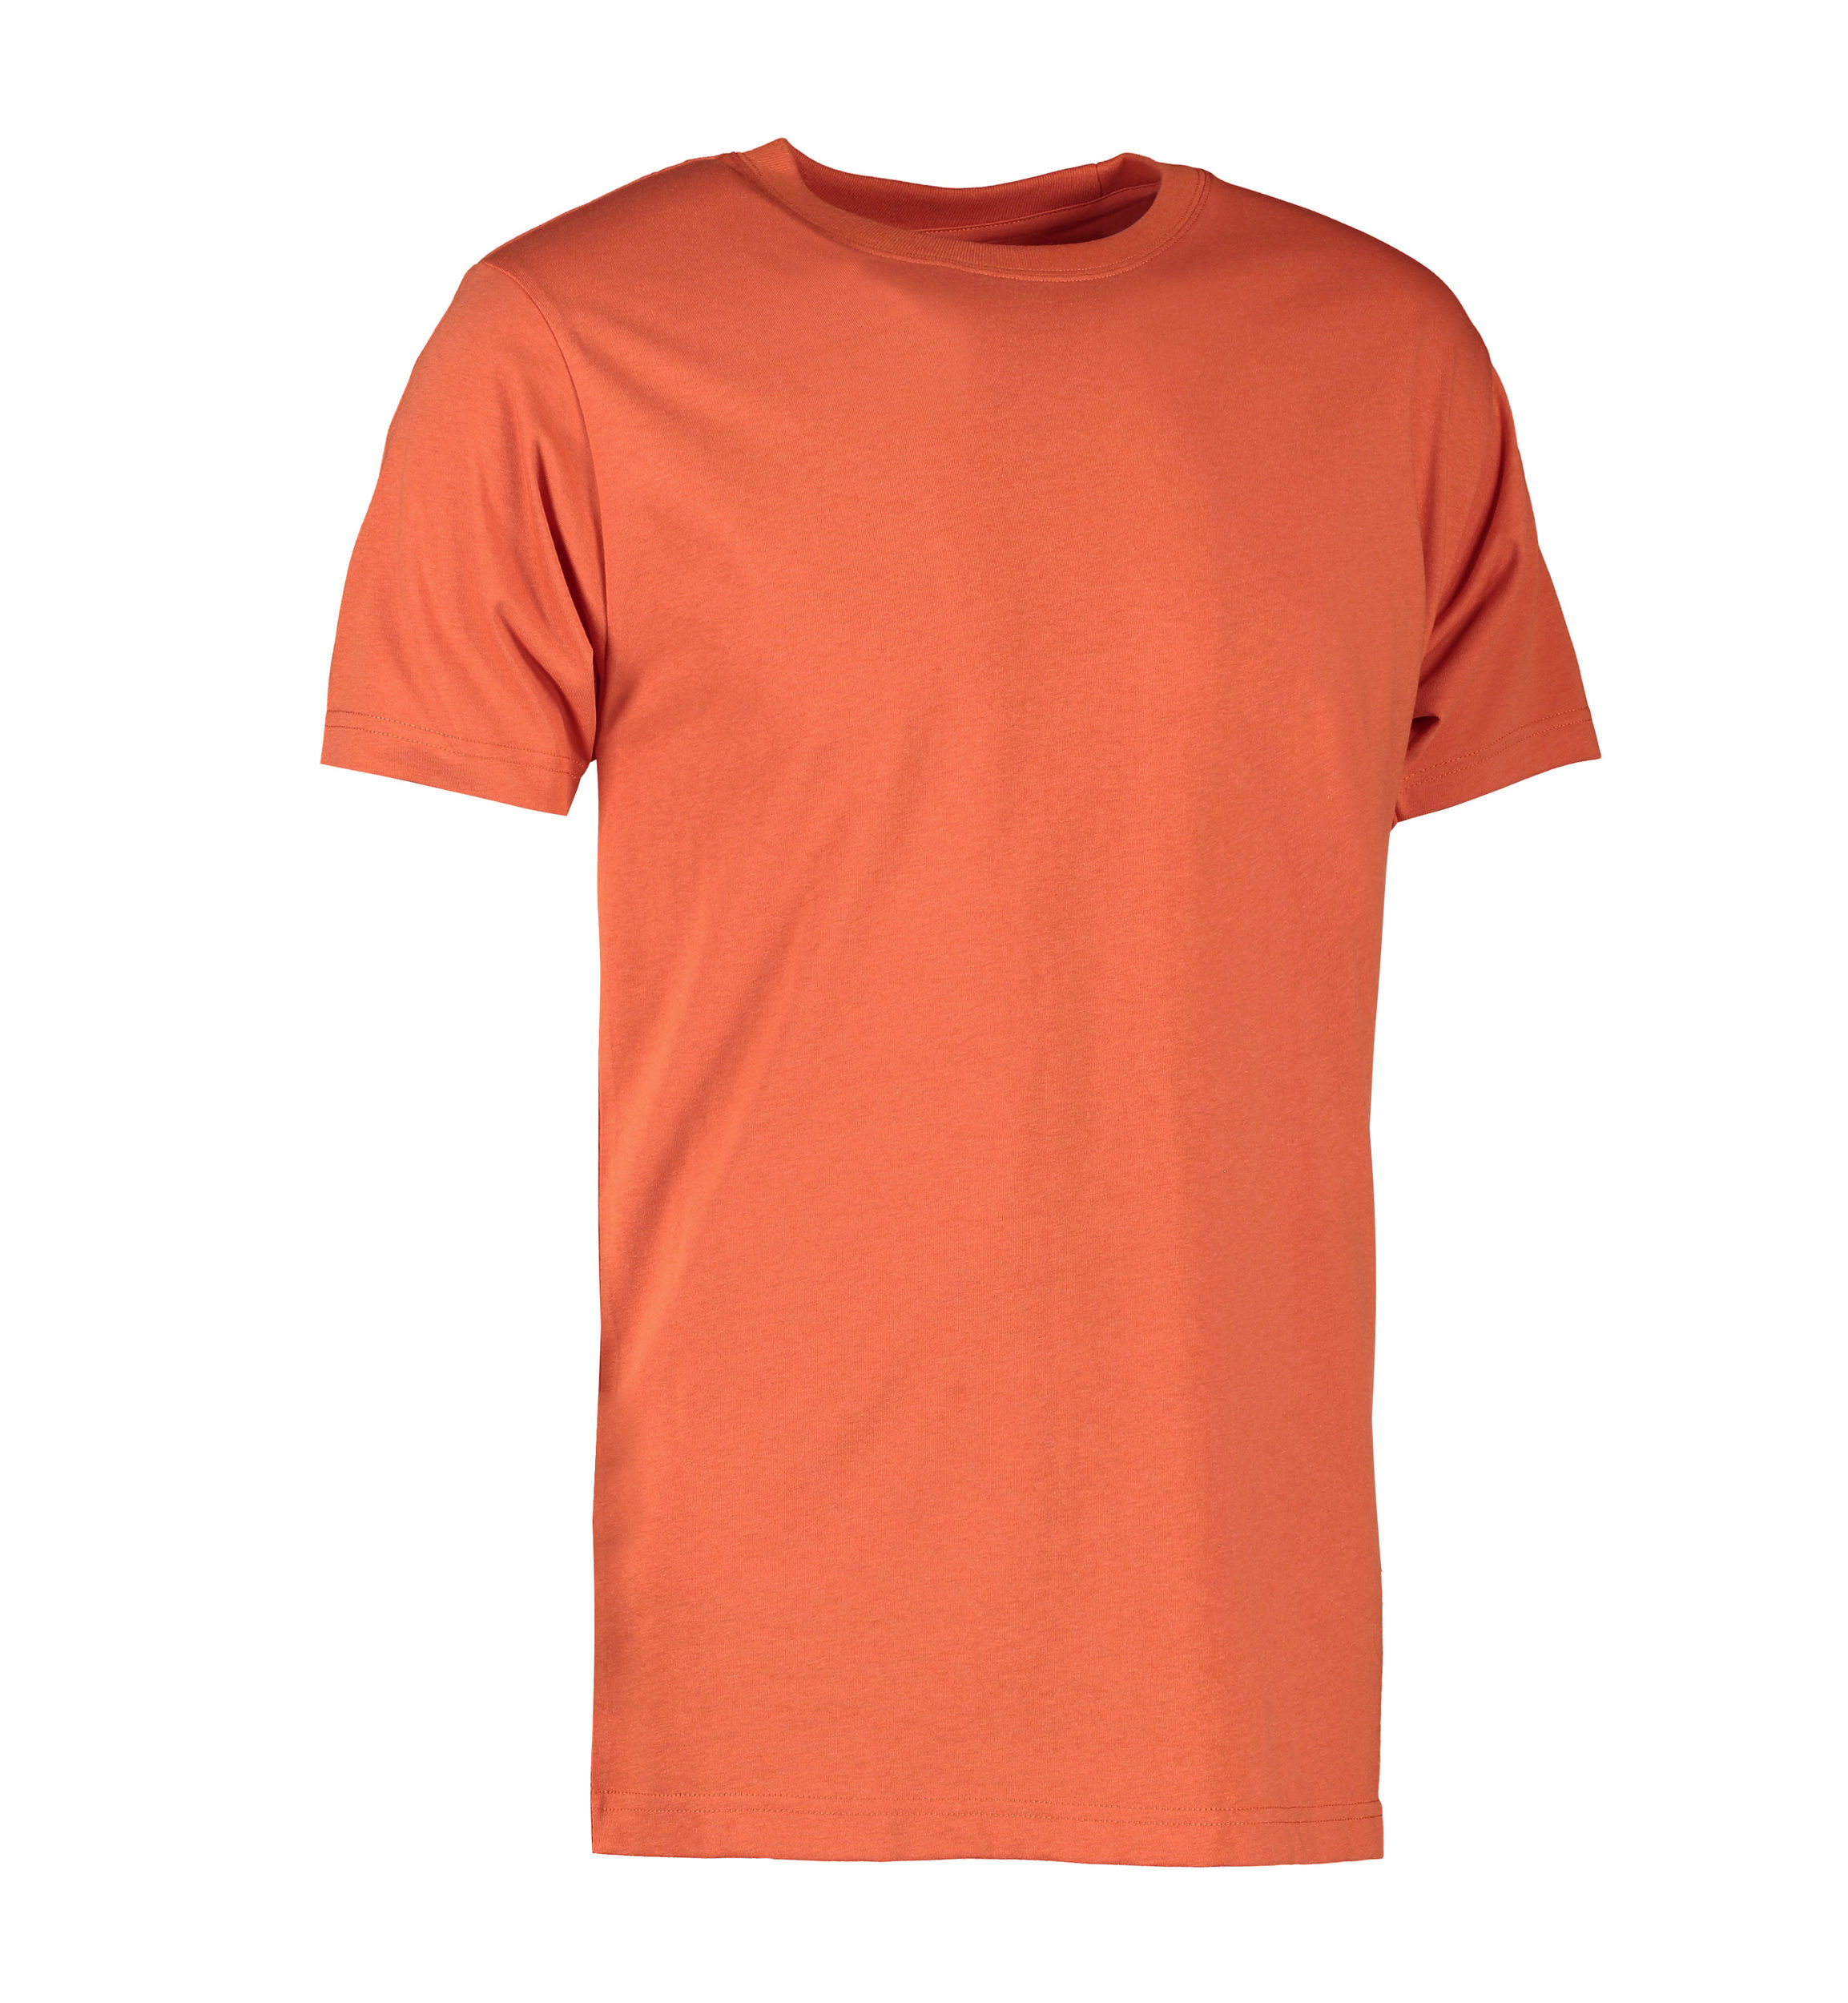 Billede af Koral farvet slidstærk t-shirt til mænd - L hos Sygeplejebutikken.dk